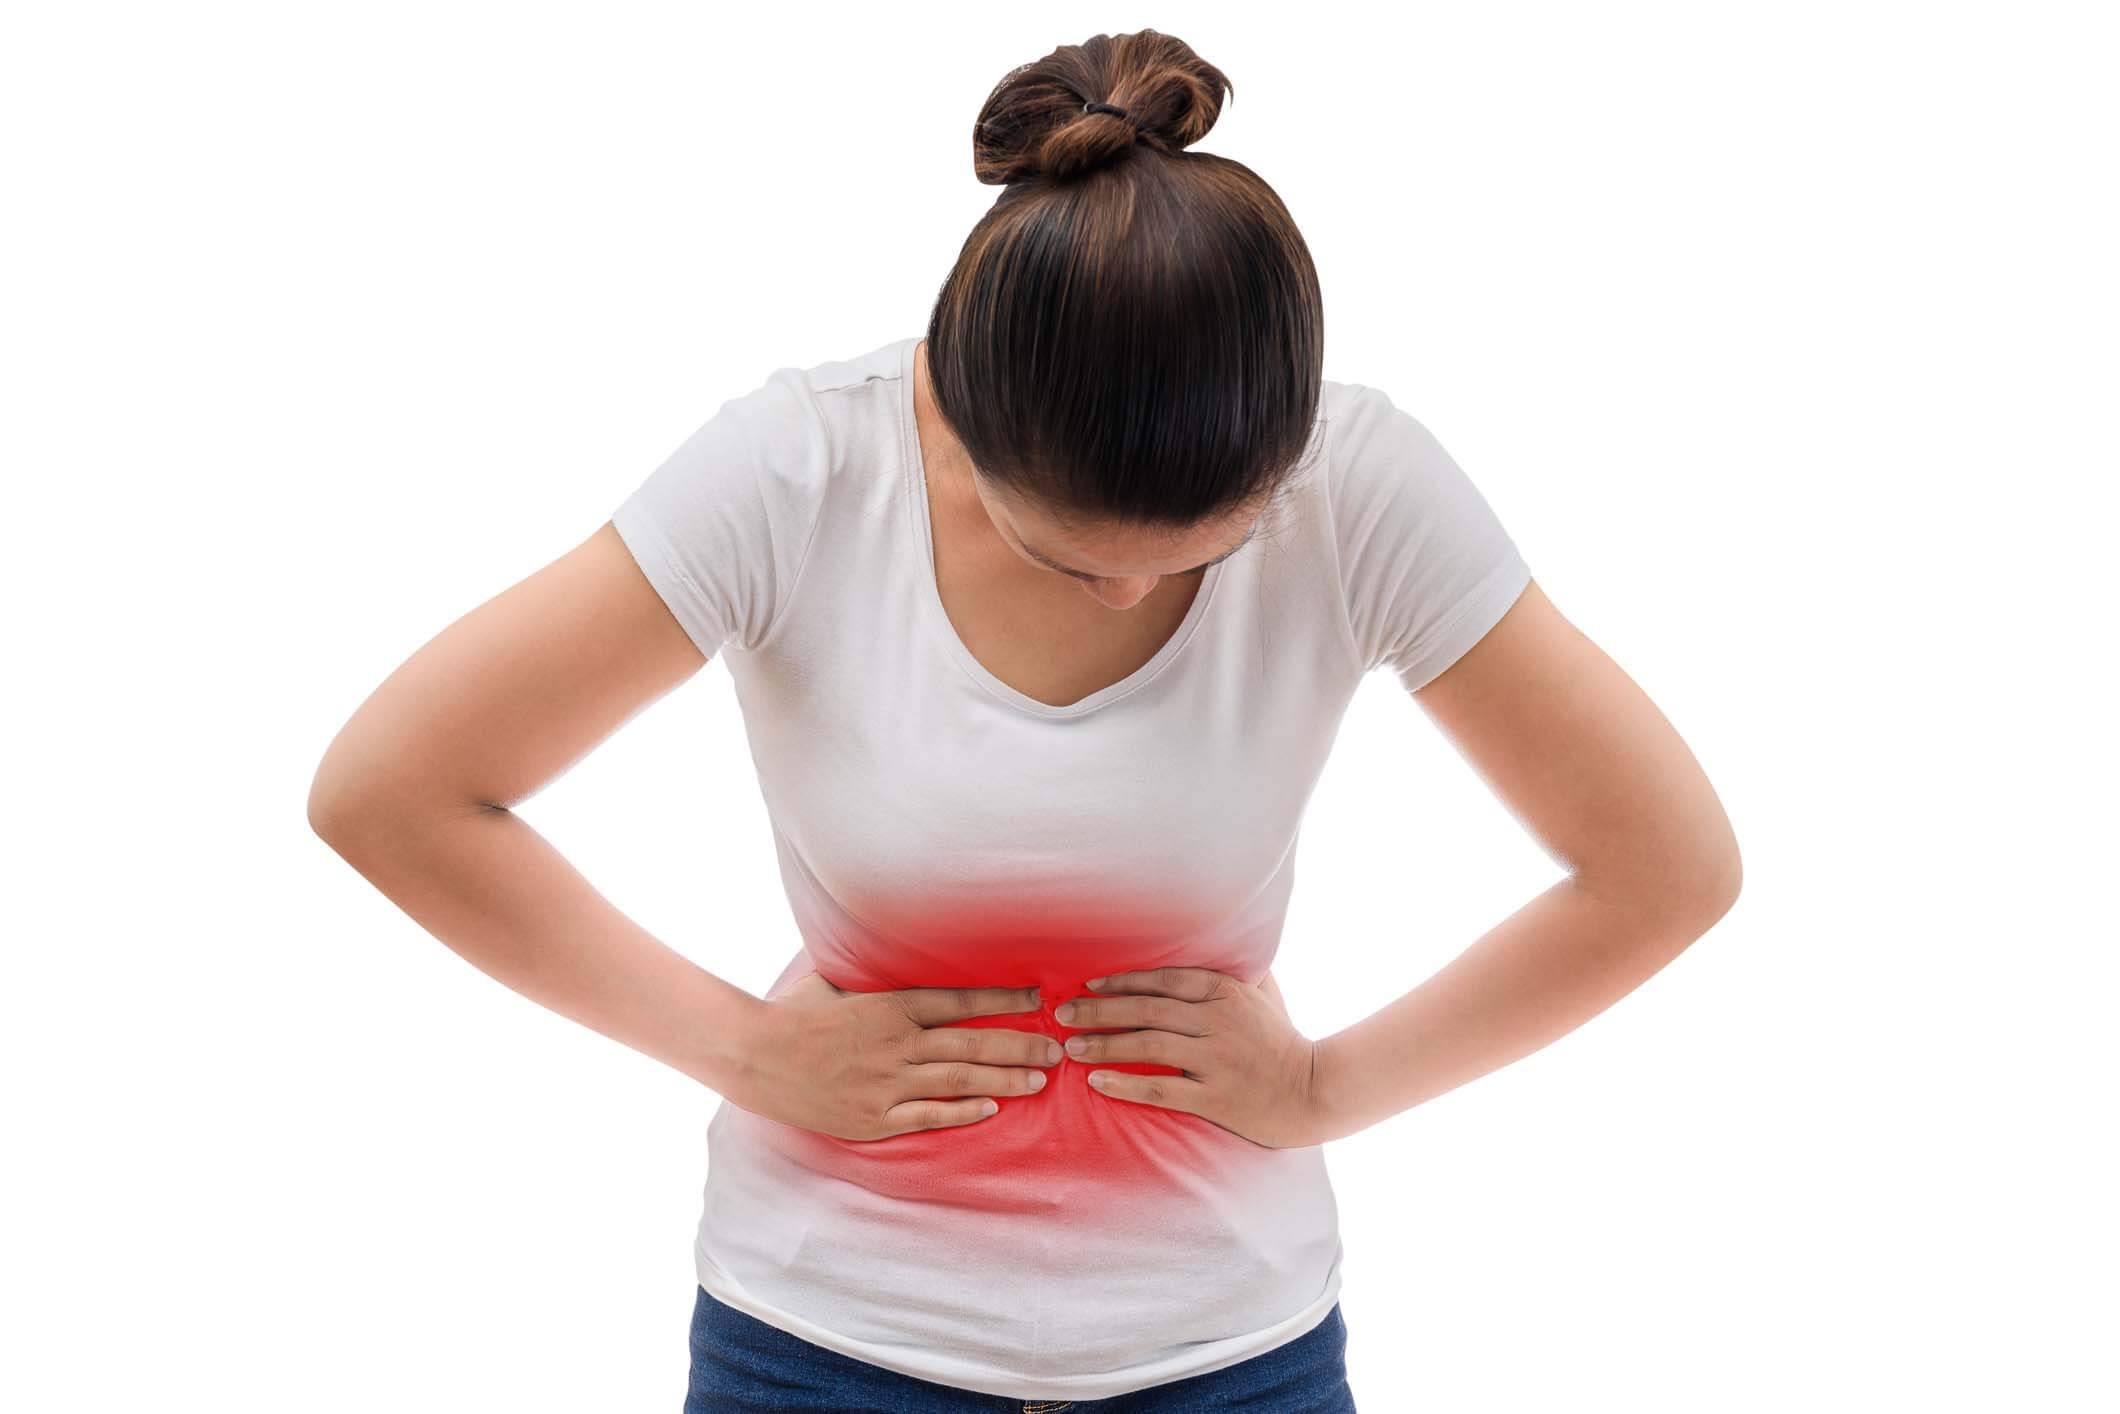 Đau bụng kinh ra máu cục là triệu chứng của bệnh gì?
